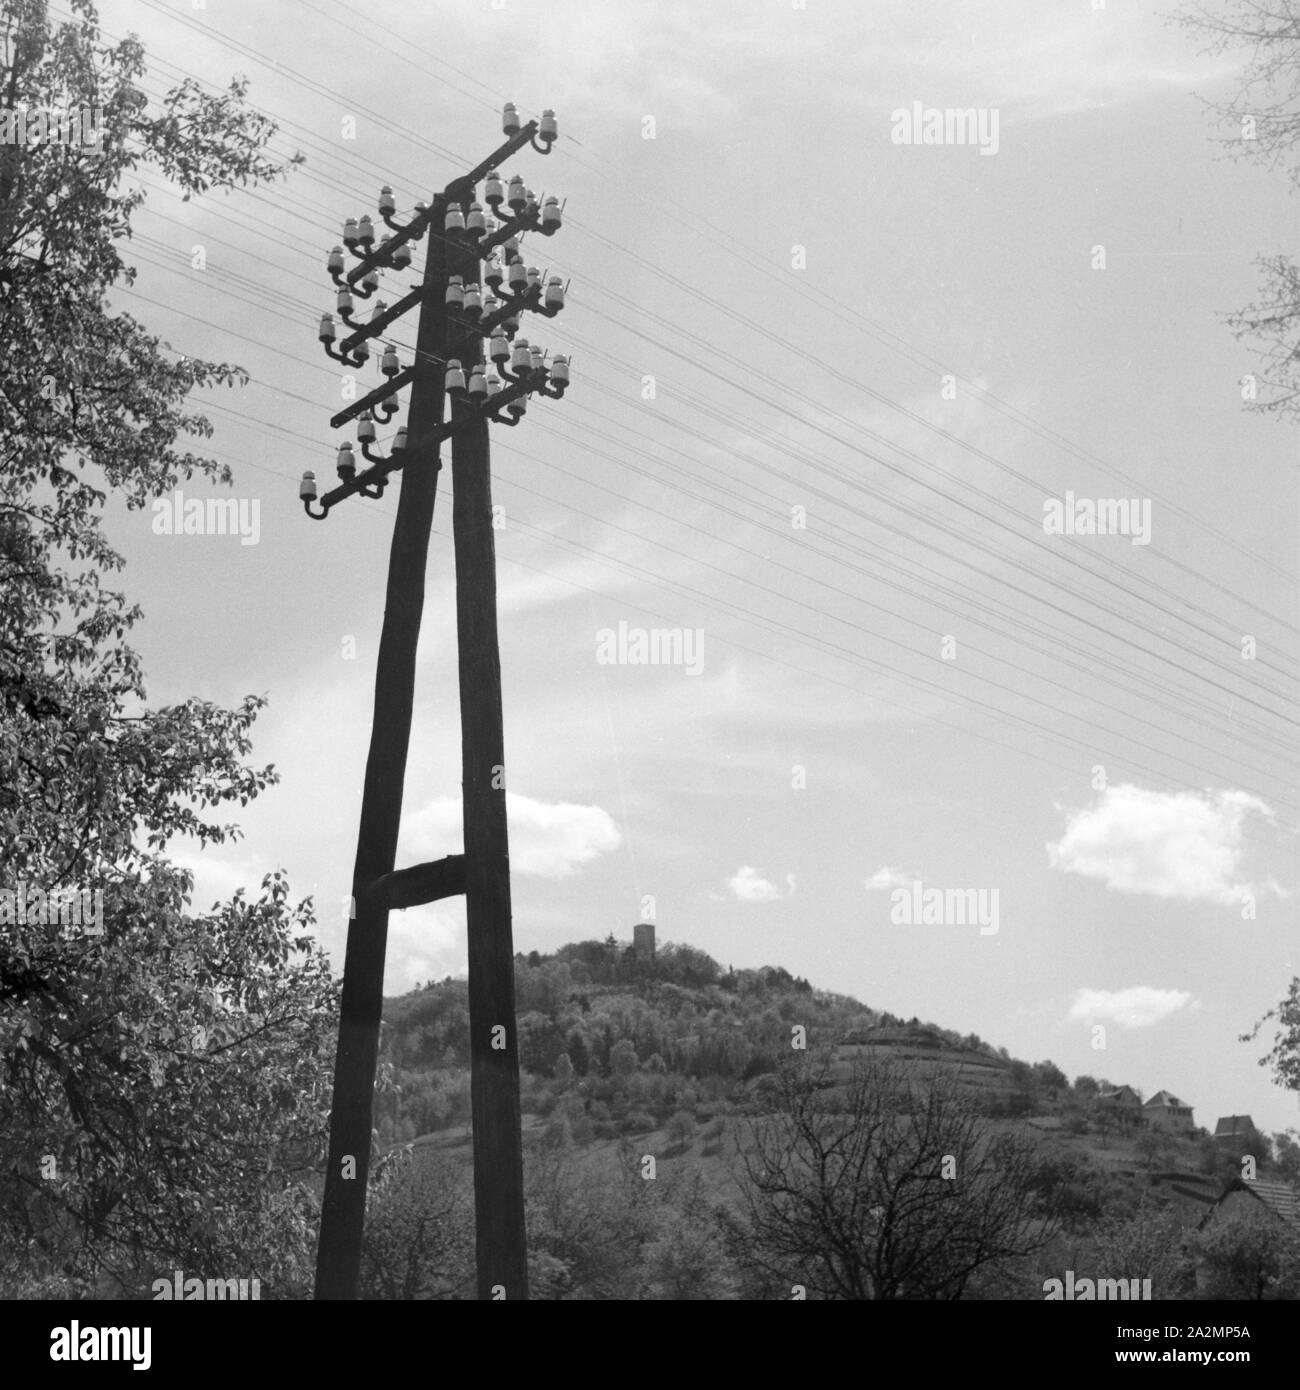 Strommast mit Telegraphenleitung, Deutschland 1930er Jahre. Telegraph wires, Germany 1930s. Stock Photo